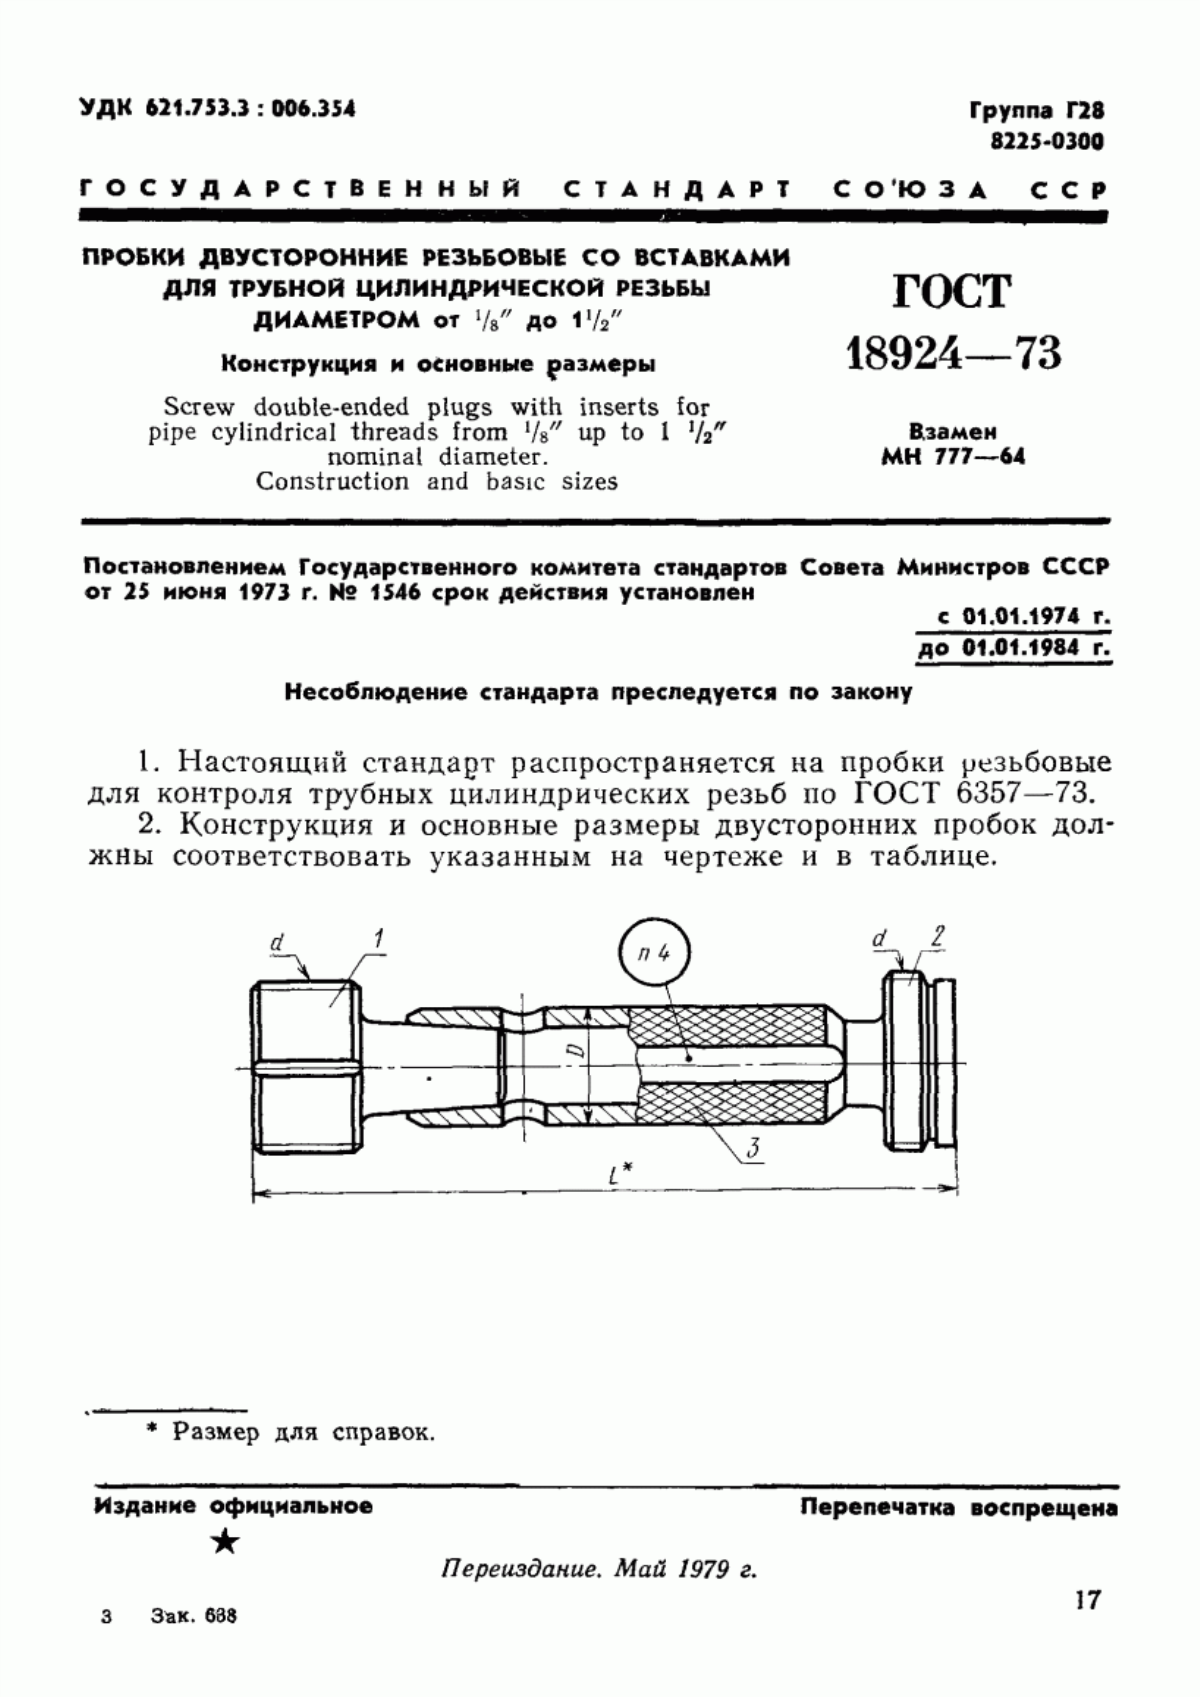 ГОСТ 18924-73 Пробки двусторонние резьбовые со вставками для трубной цилиндрической резьбы диаметром от 1/16" до 1 1/2". Конструкция и основные размеры